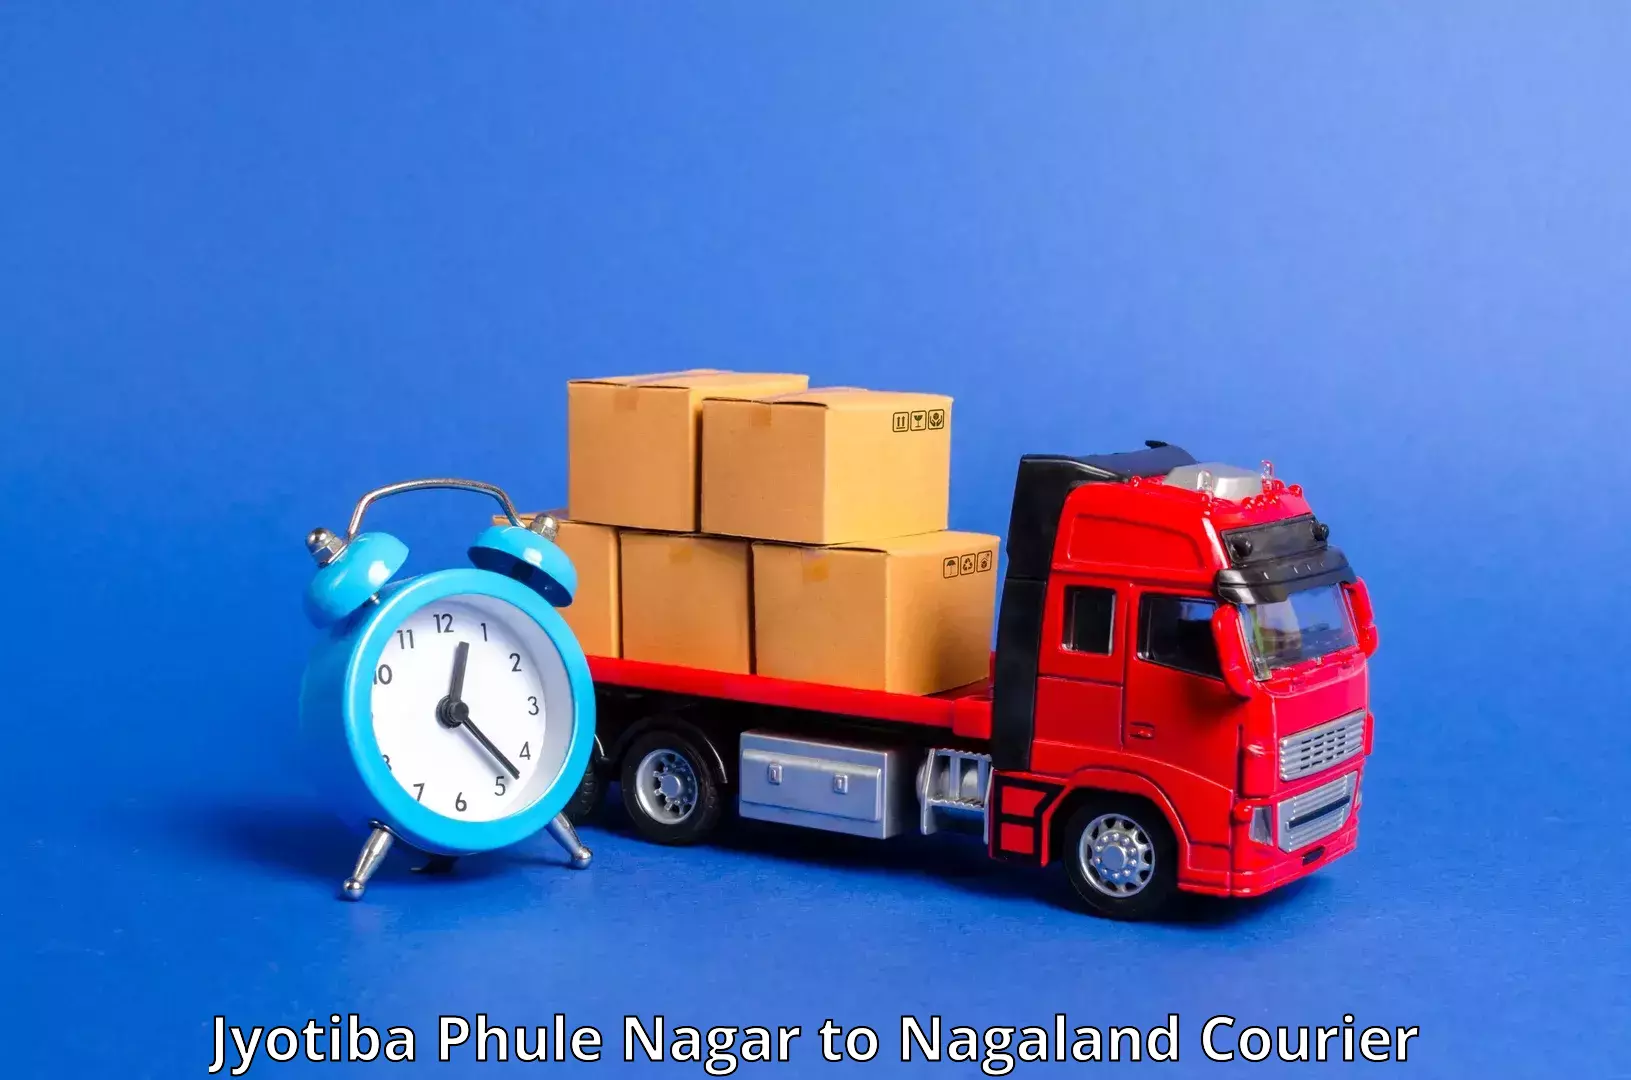 Nationwide shipping services Jyotiba Phule Nagar to Nagaland